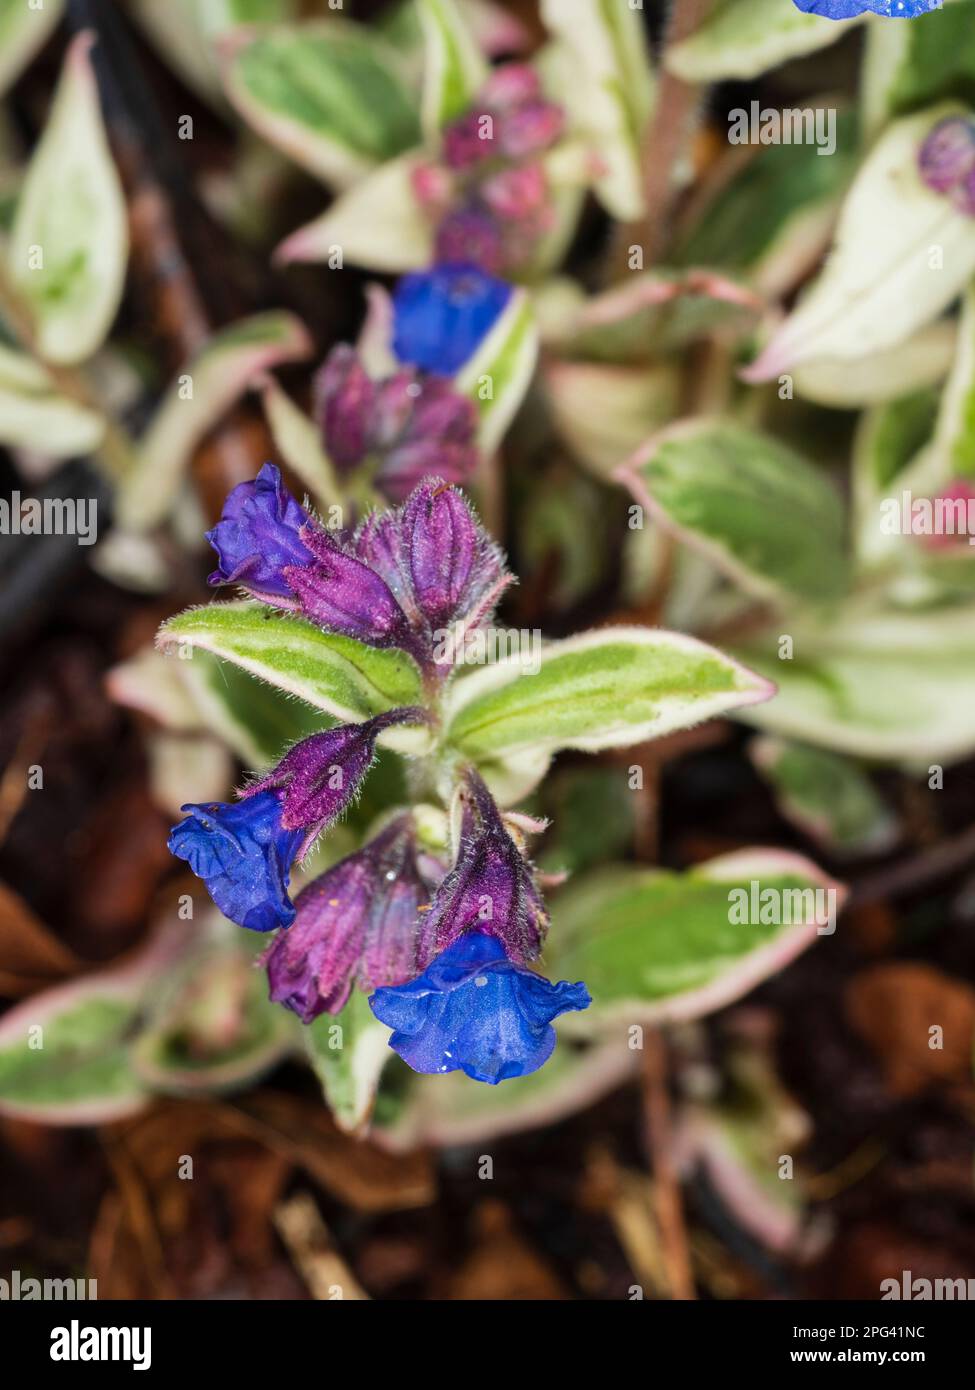 Azul, flores de principios de primavera de la lungwort perenne resistente variegada blanca, Pulmonaria 'Open Skies' Foto de stock